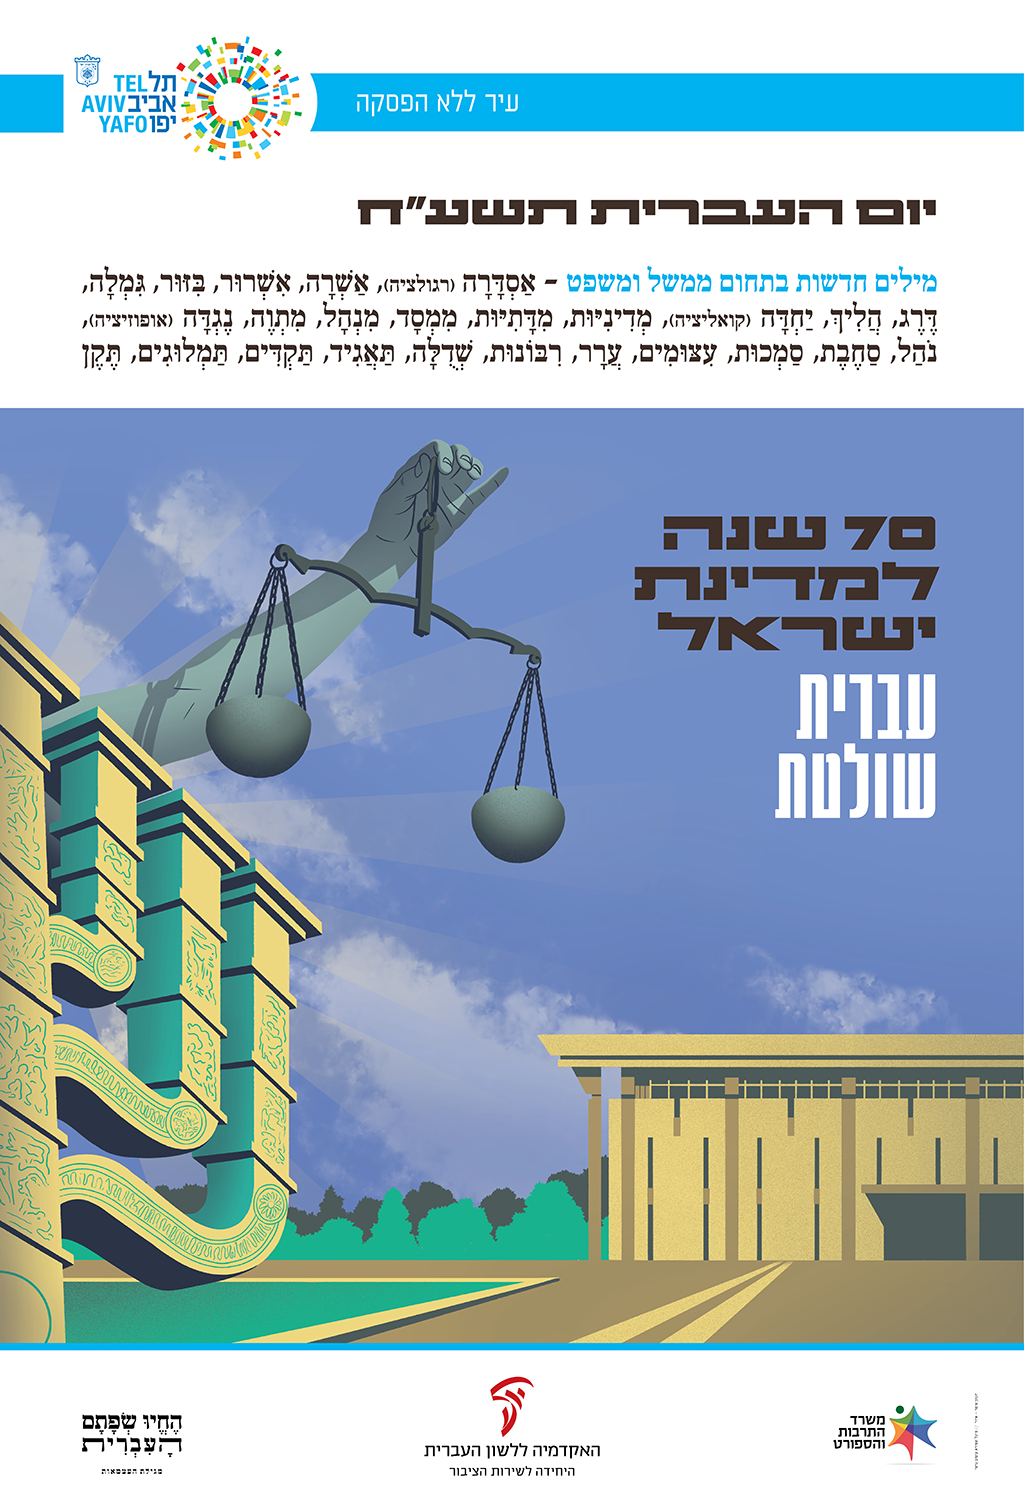 כרזה ליום העברית תשע"ח איור של הכנסת, מנורה, ויד מחזיקה מאזניים וכיתוב "עברית שולטת"